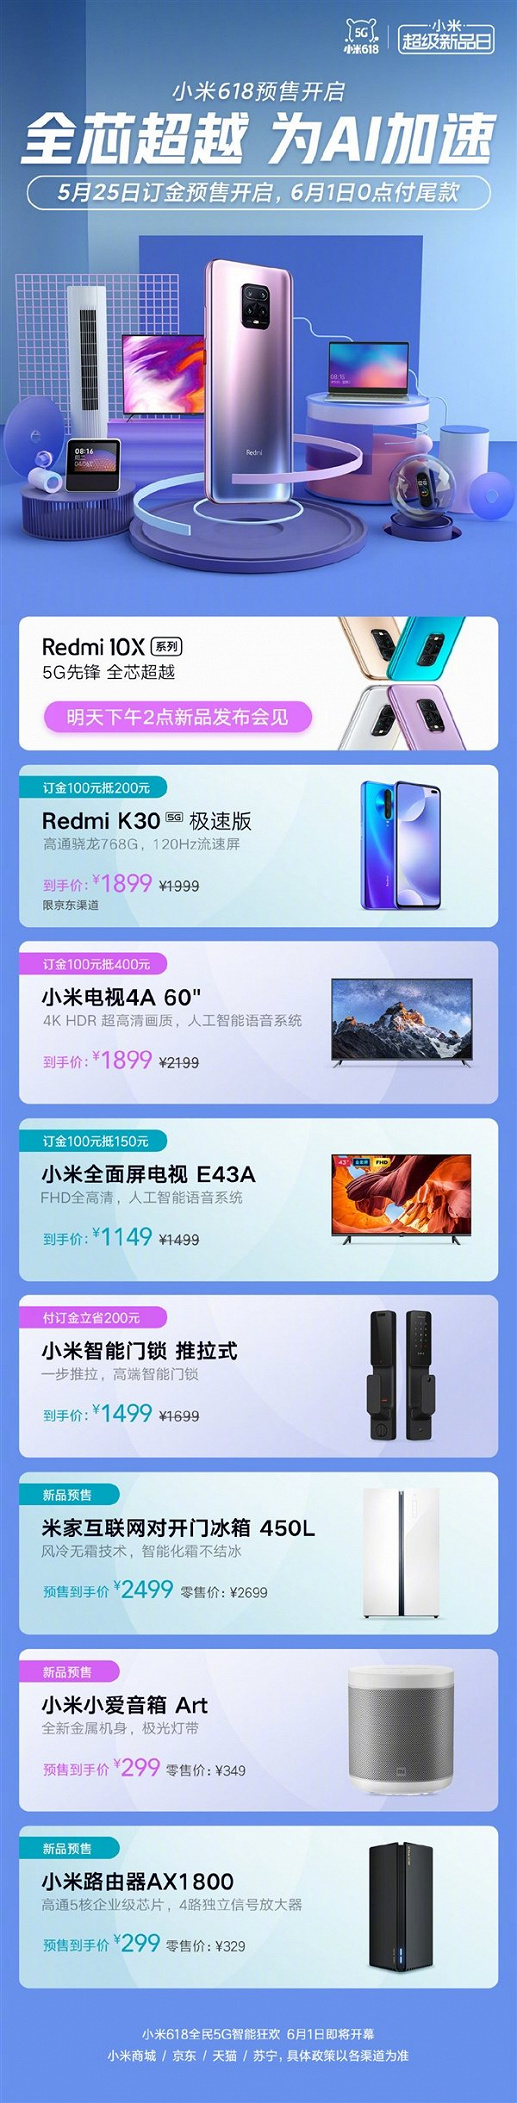 Xiaomi резко опускает цены на смартфоны, телевизоры, холодильники, роутеры и прочую технику в Китае